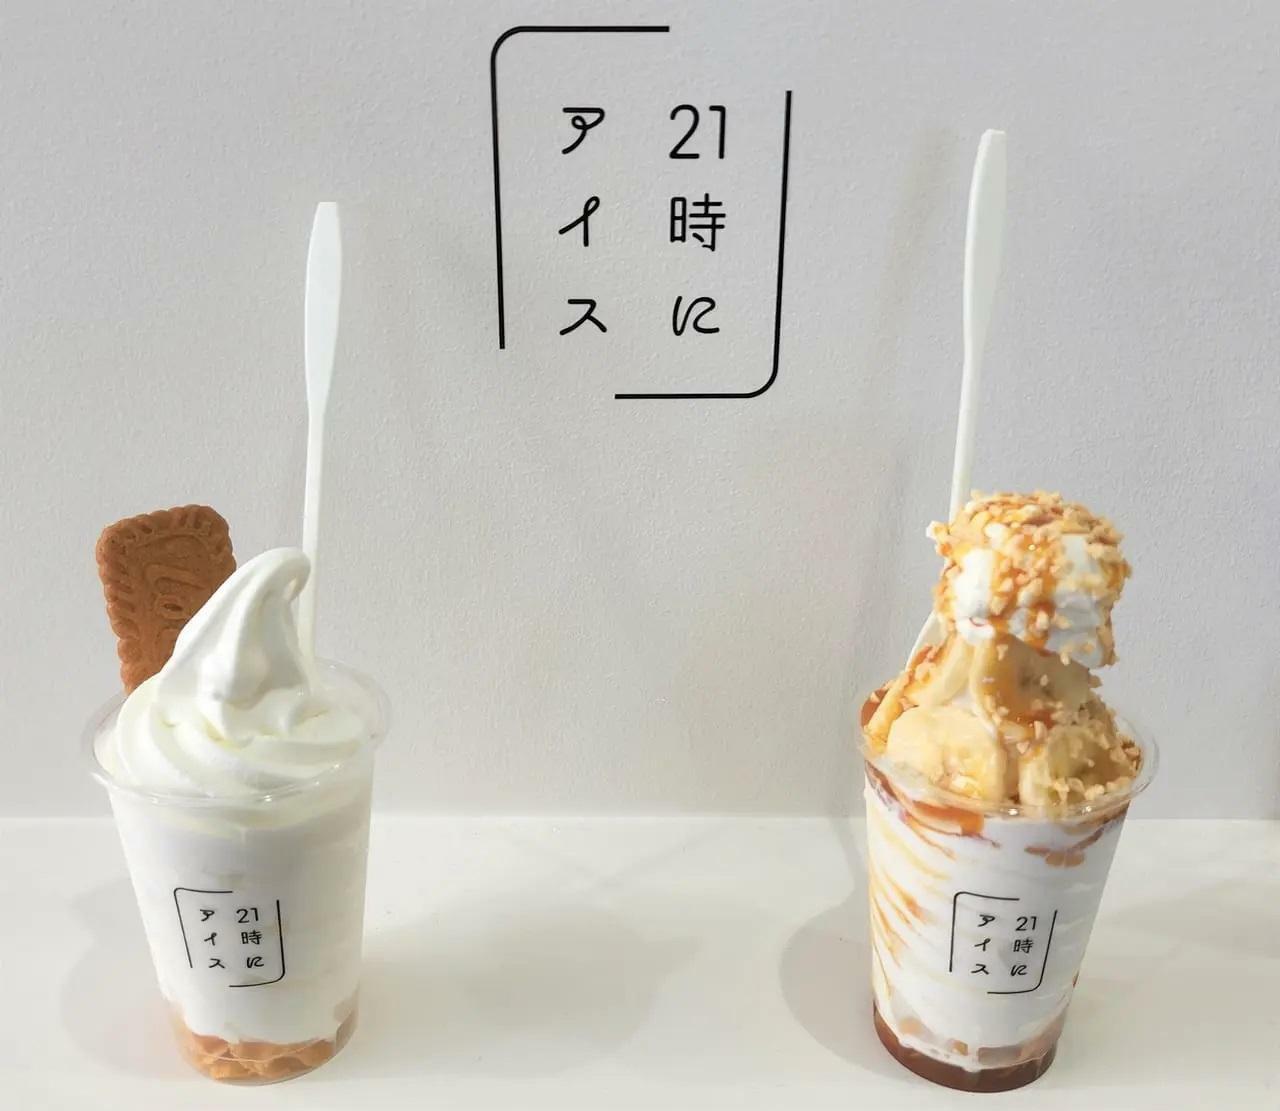 以前、「21時にアイス 徳島東船場店」で試食させてもらったアイス2種類。